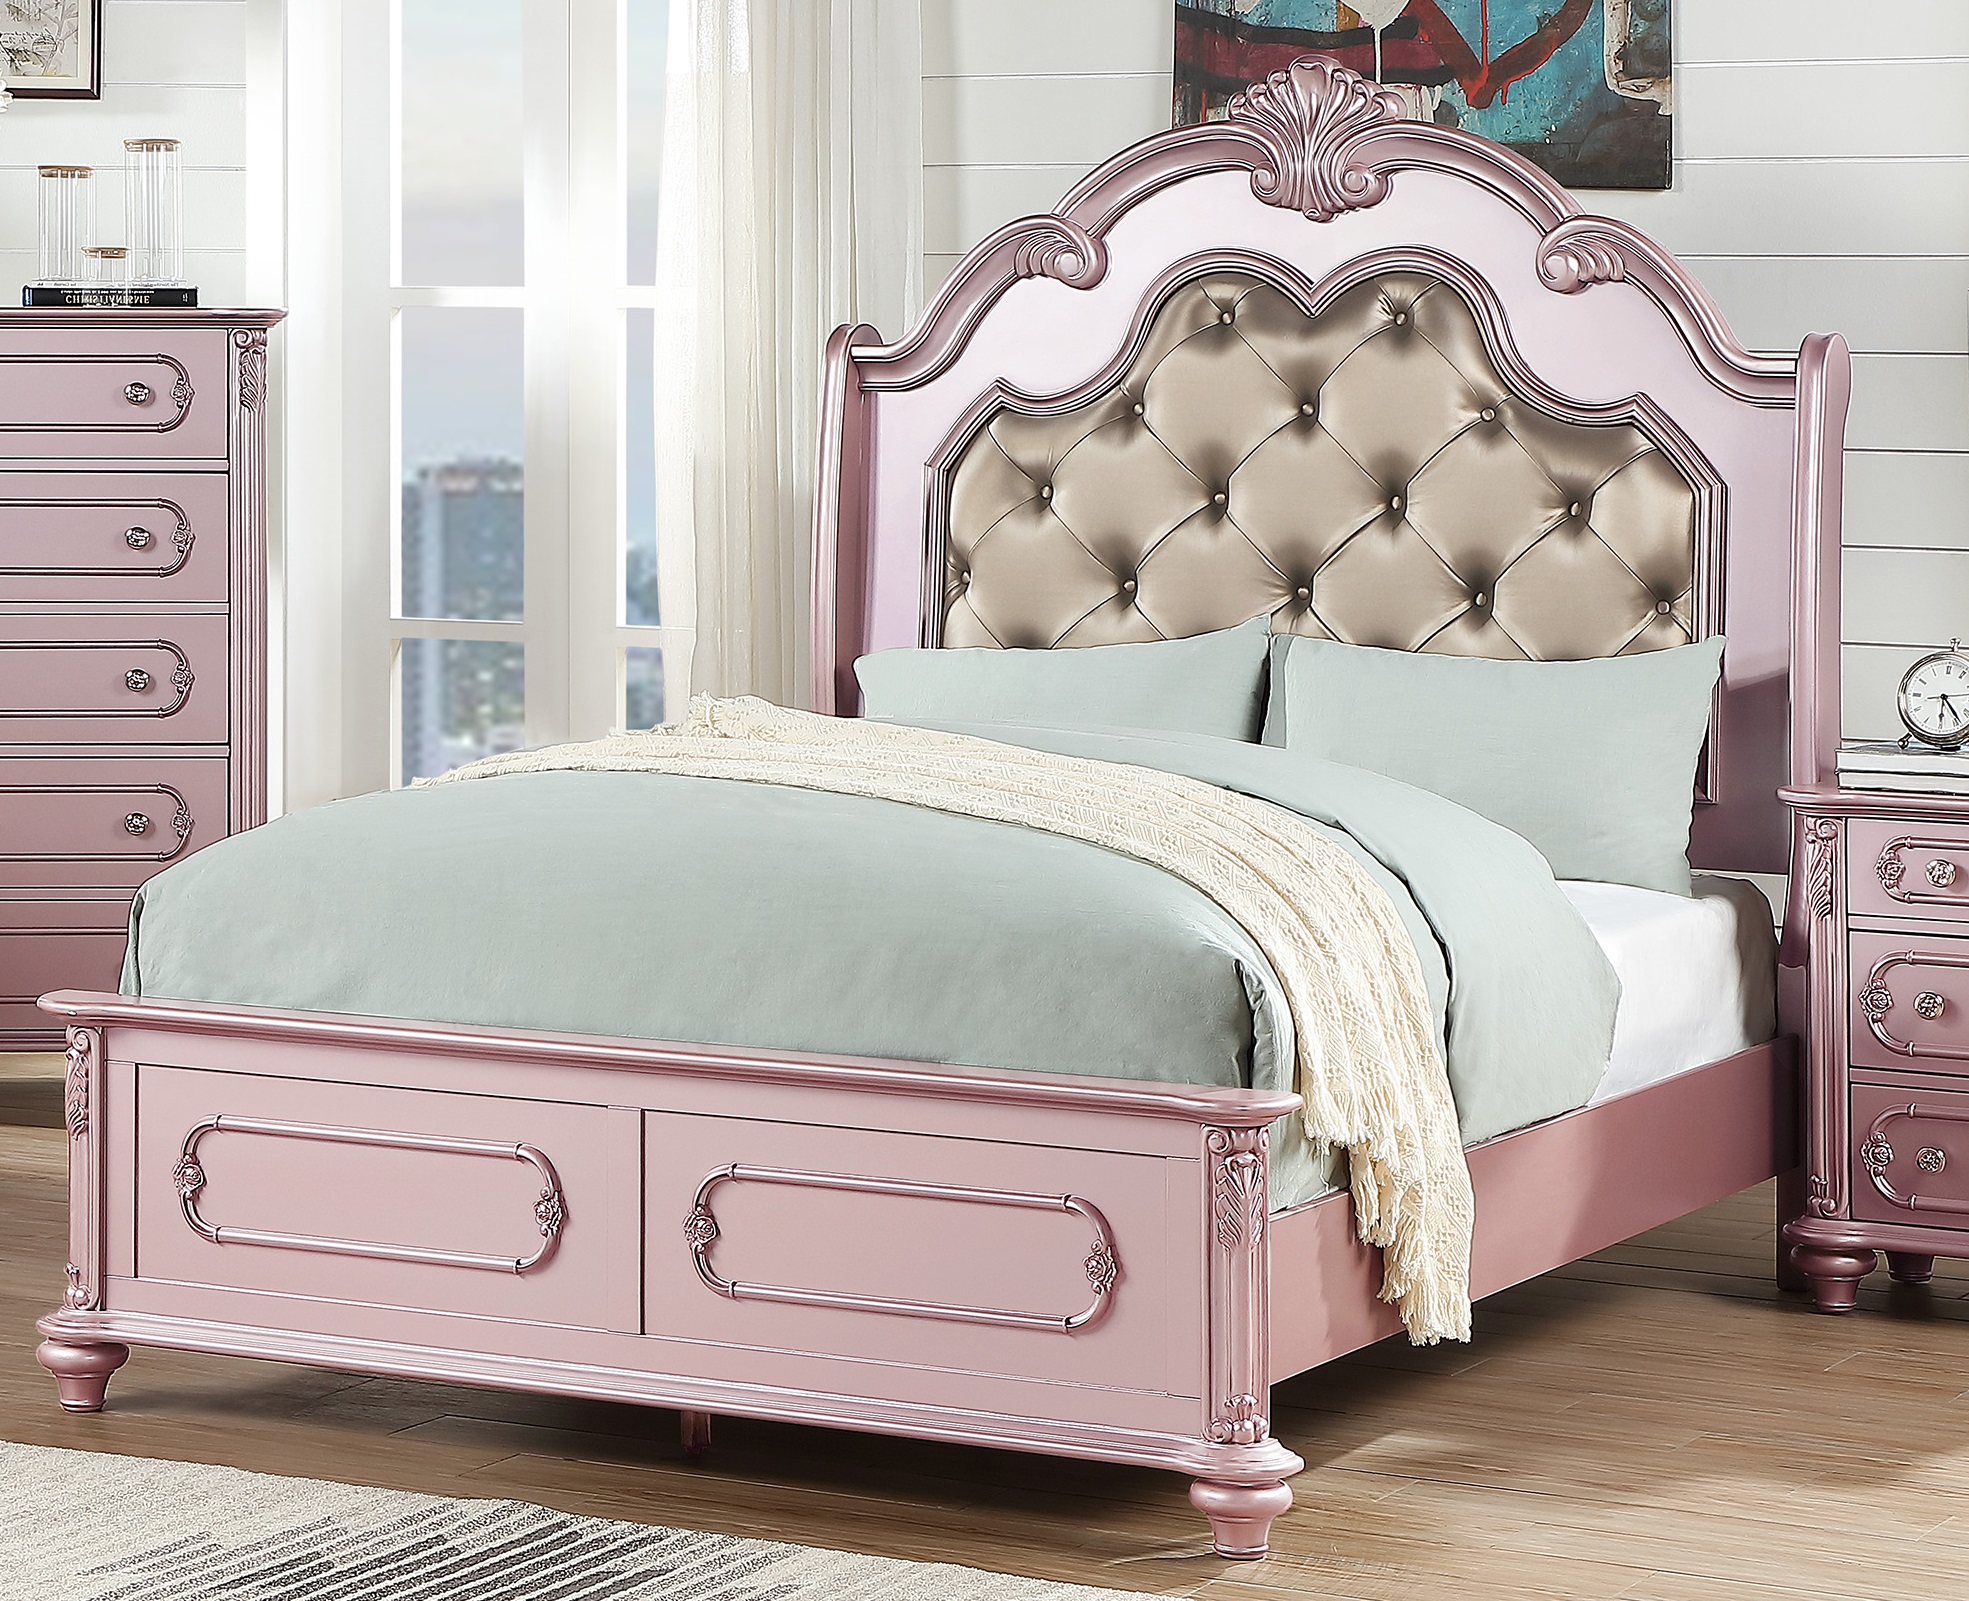 Esofa 1pc Bedroom Queen Size Bed, Gold Upholstered Headboard Queen